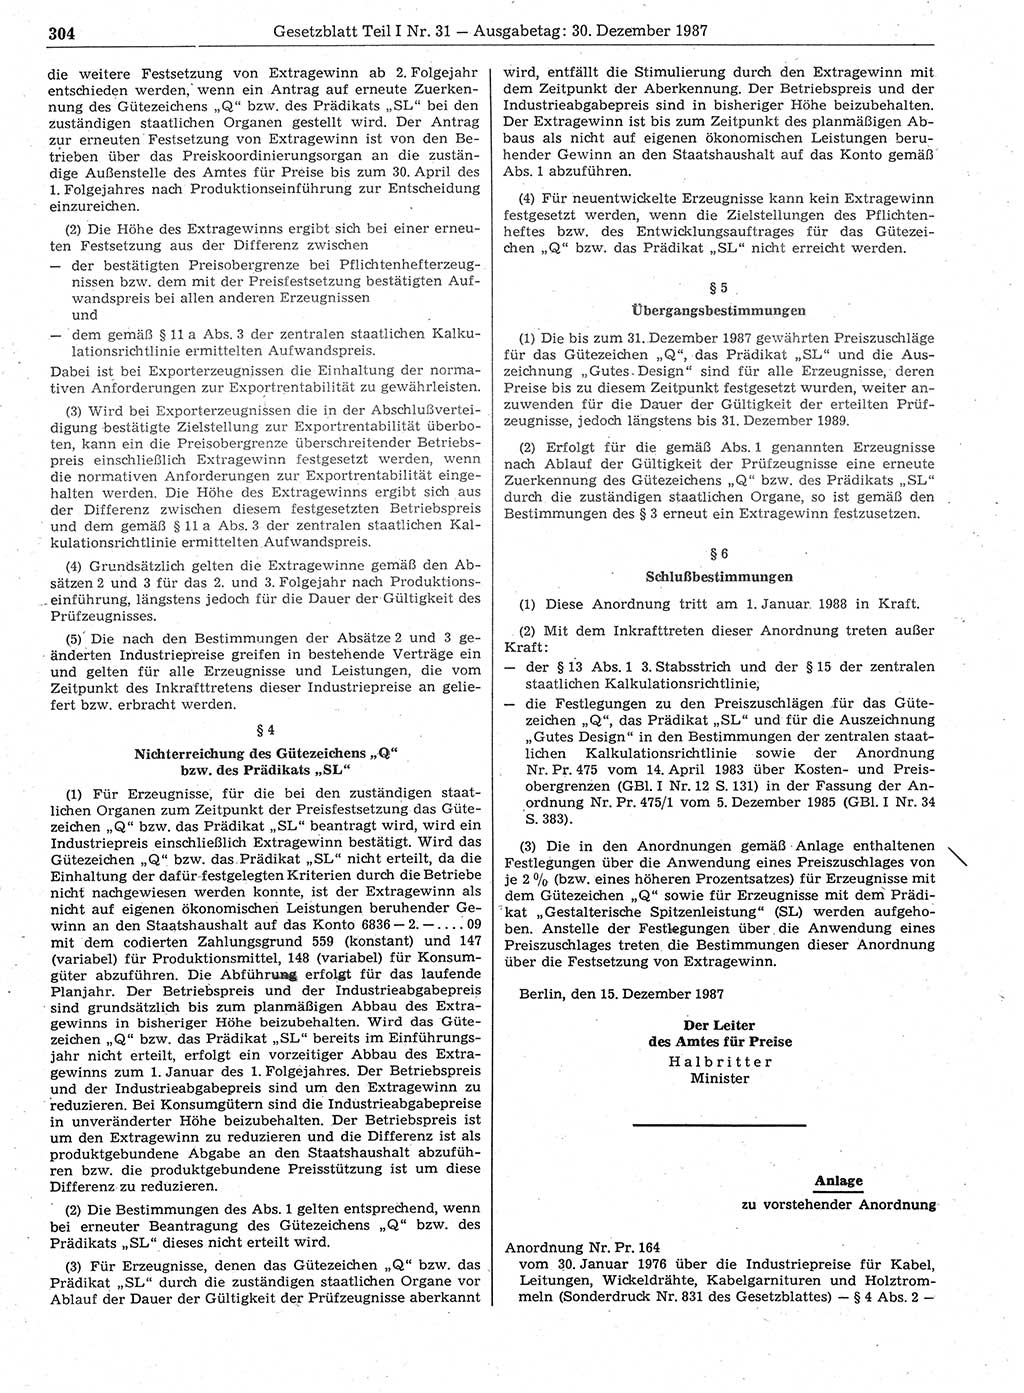 Gesetzblatt (GBl.) der Deutschen Demokratischen Republik (DDR) Teil Ⅰ 1987, Seite 304 (GBl. DDR Ⅰ 1987, S. 304)